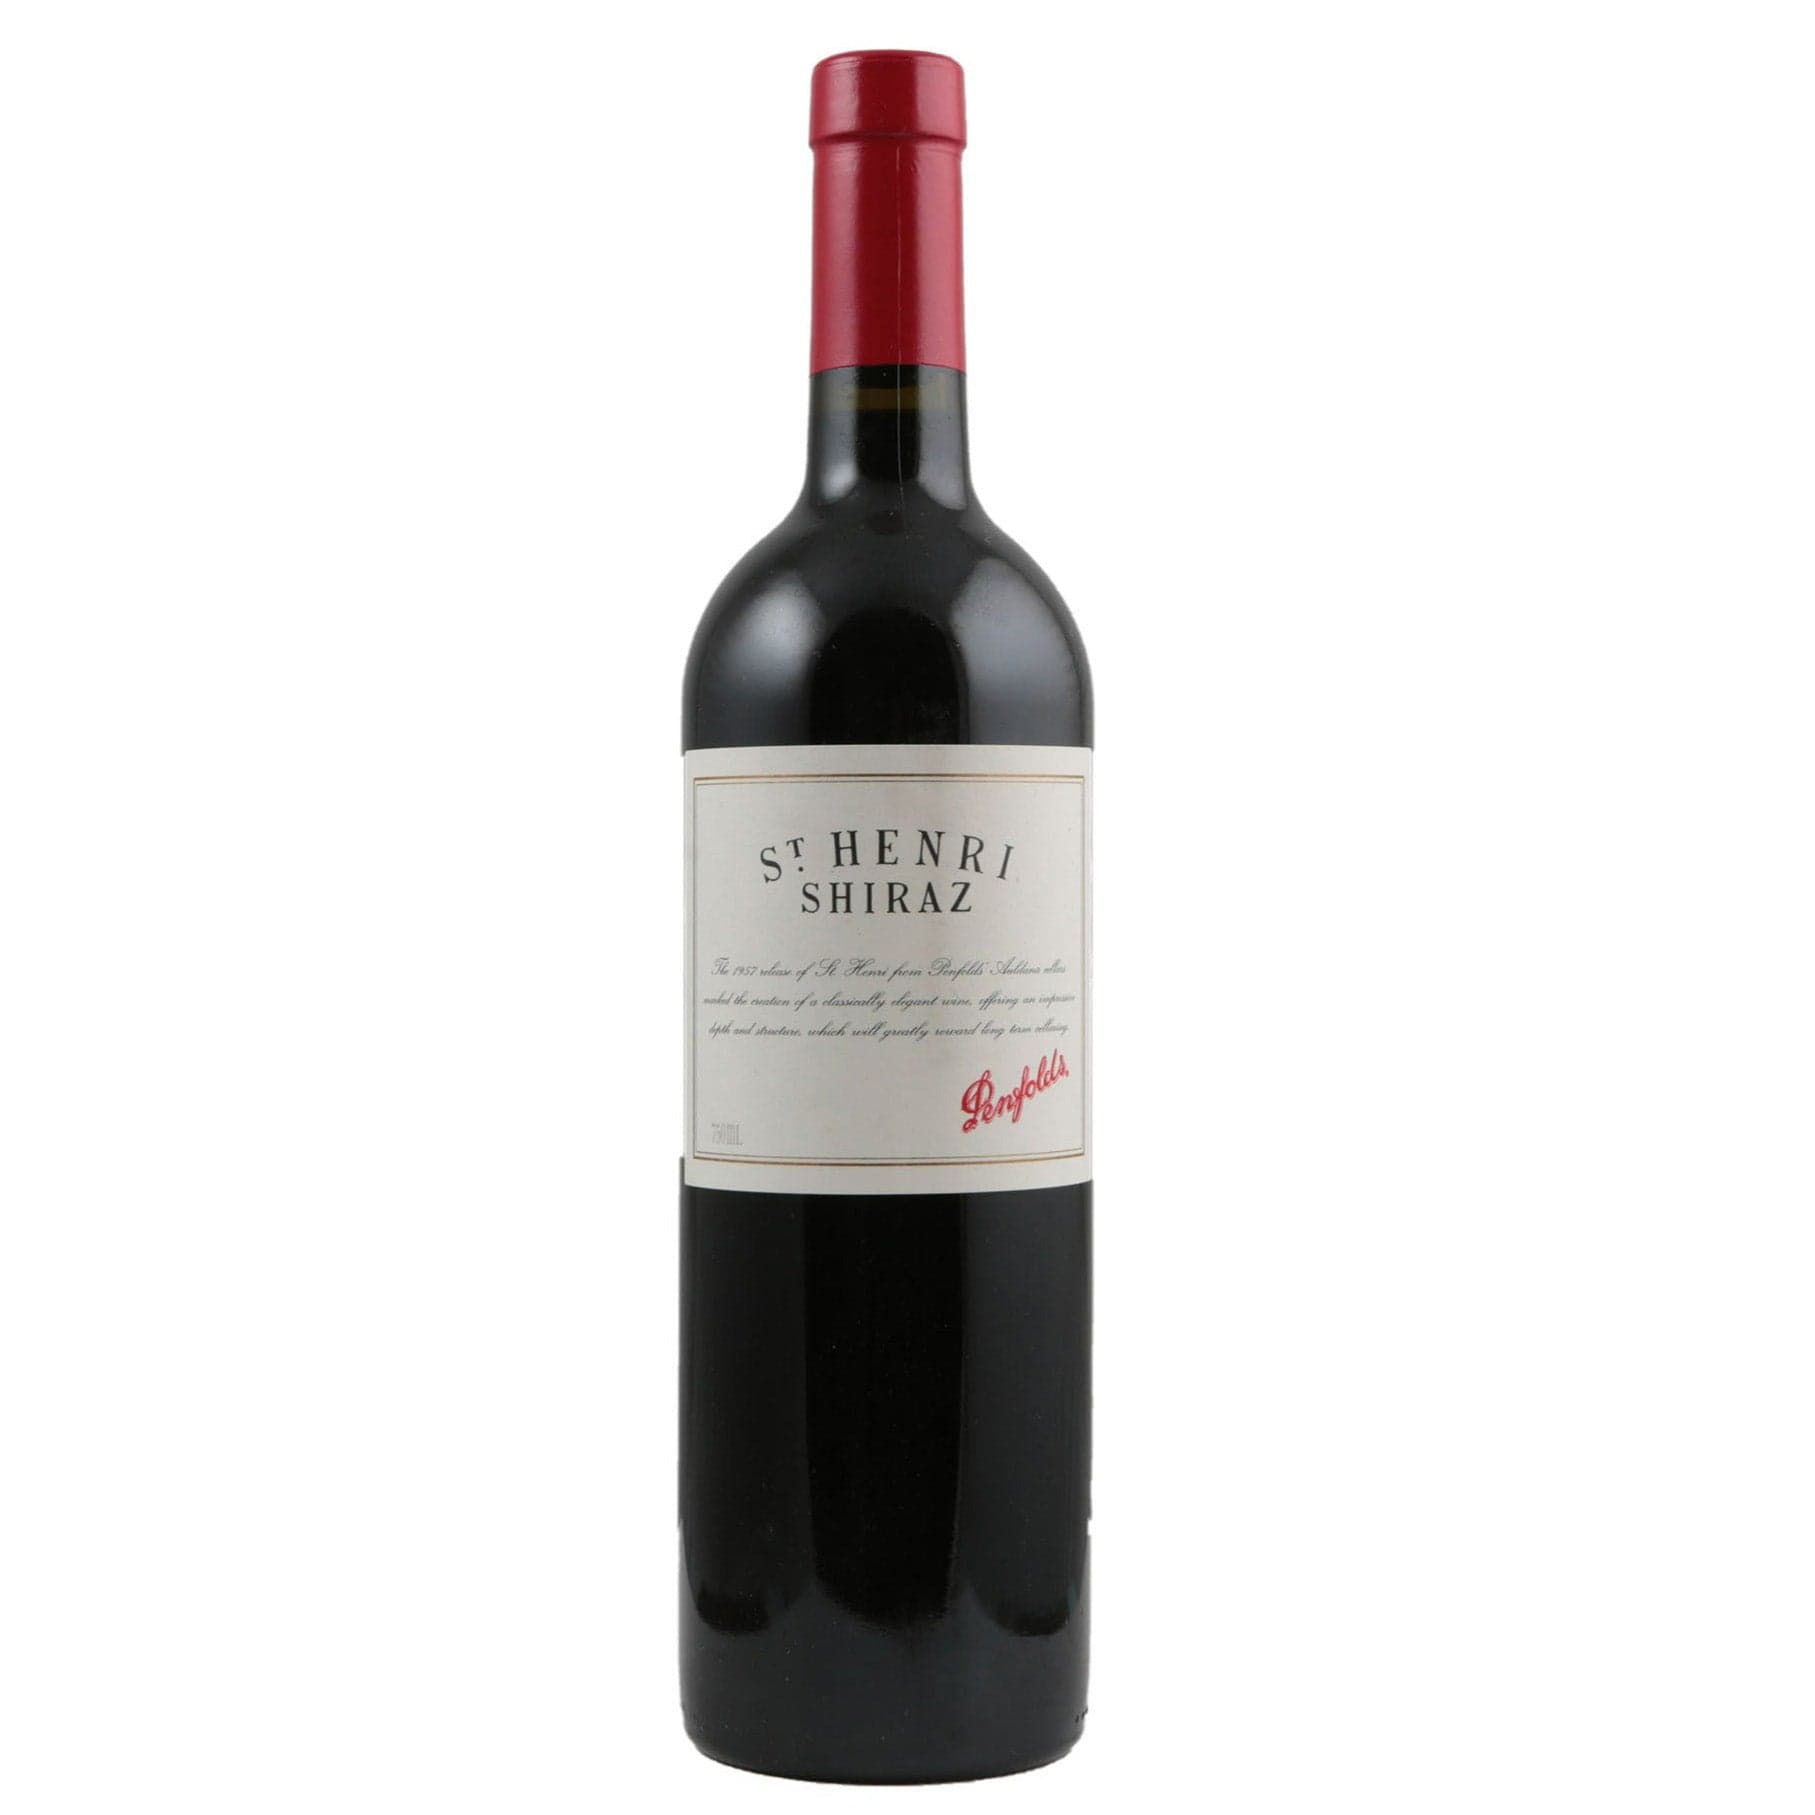 Single bottle of Red wine Penfolds, St Henri Shiraz, South Australia, 2006 89% Shiraz & 11% Cabernet Sauvignon